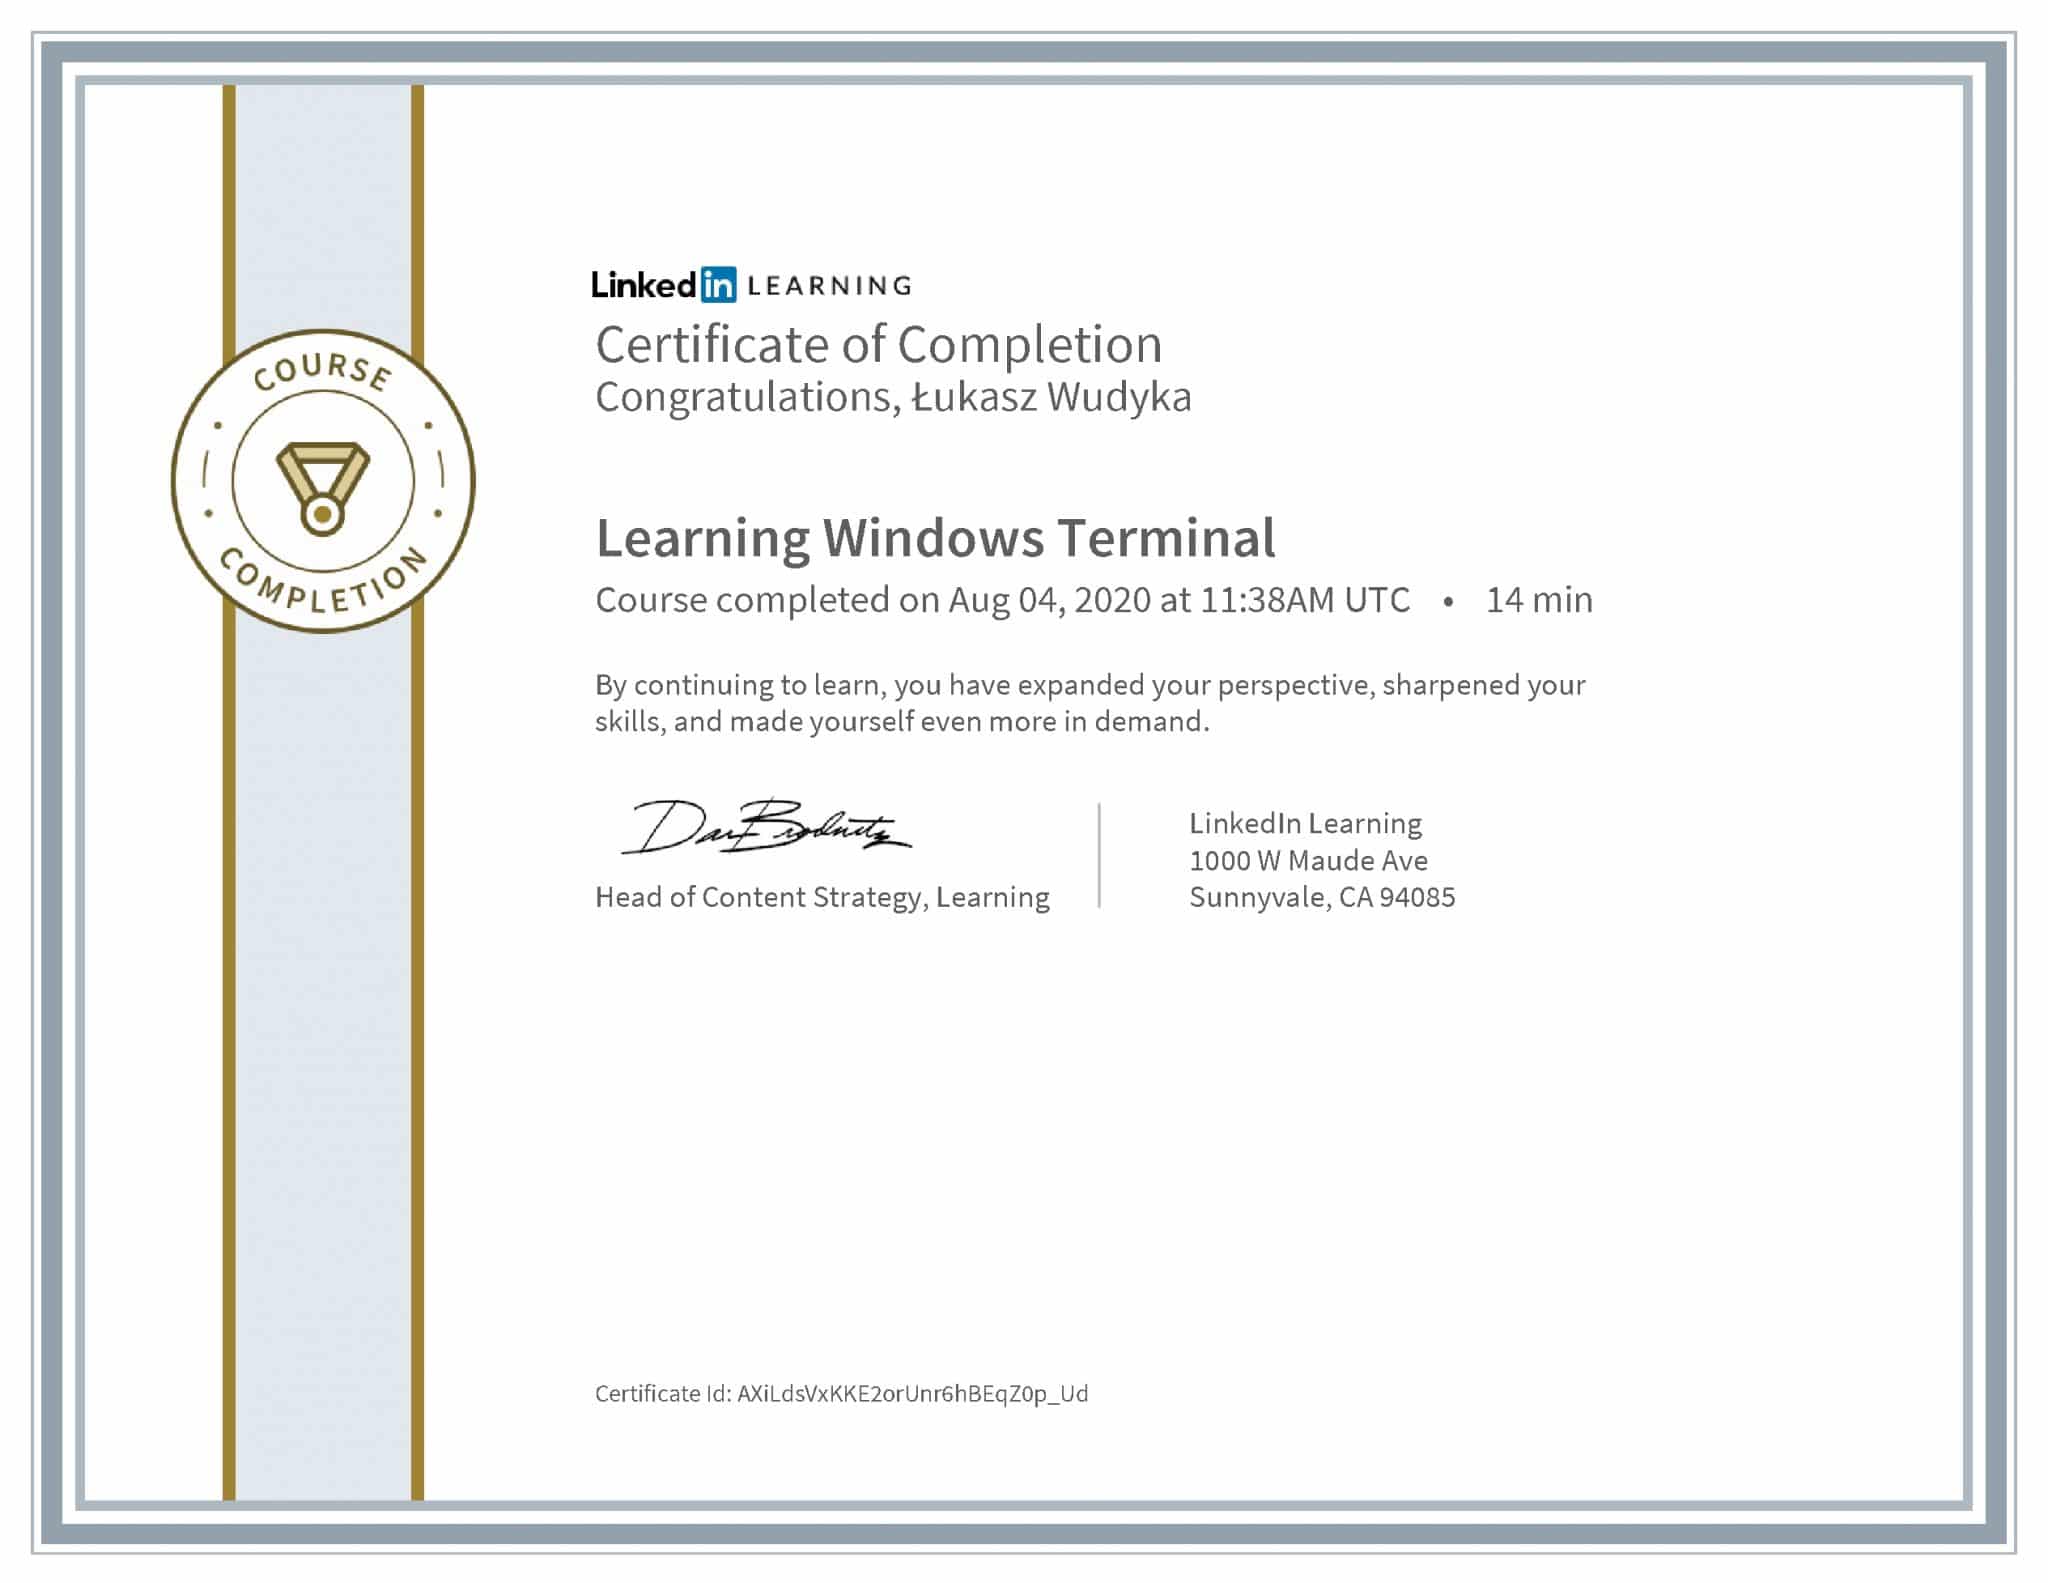 Łukasz Wudyka certyfikat LinkedIn Learning Windows Terminal